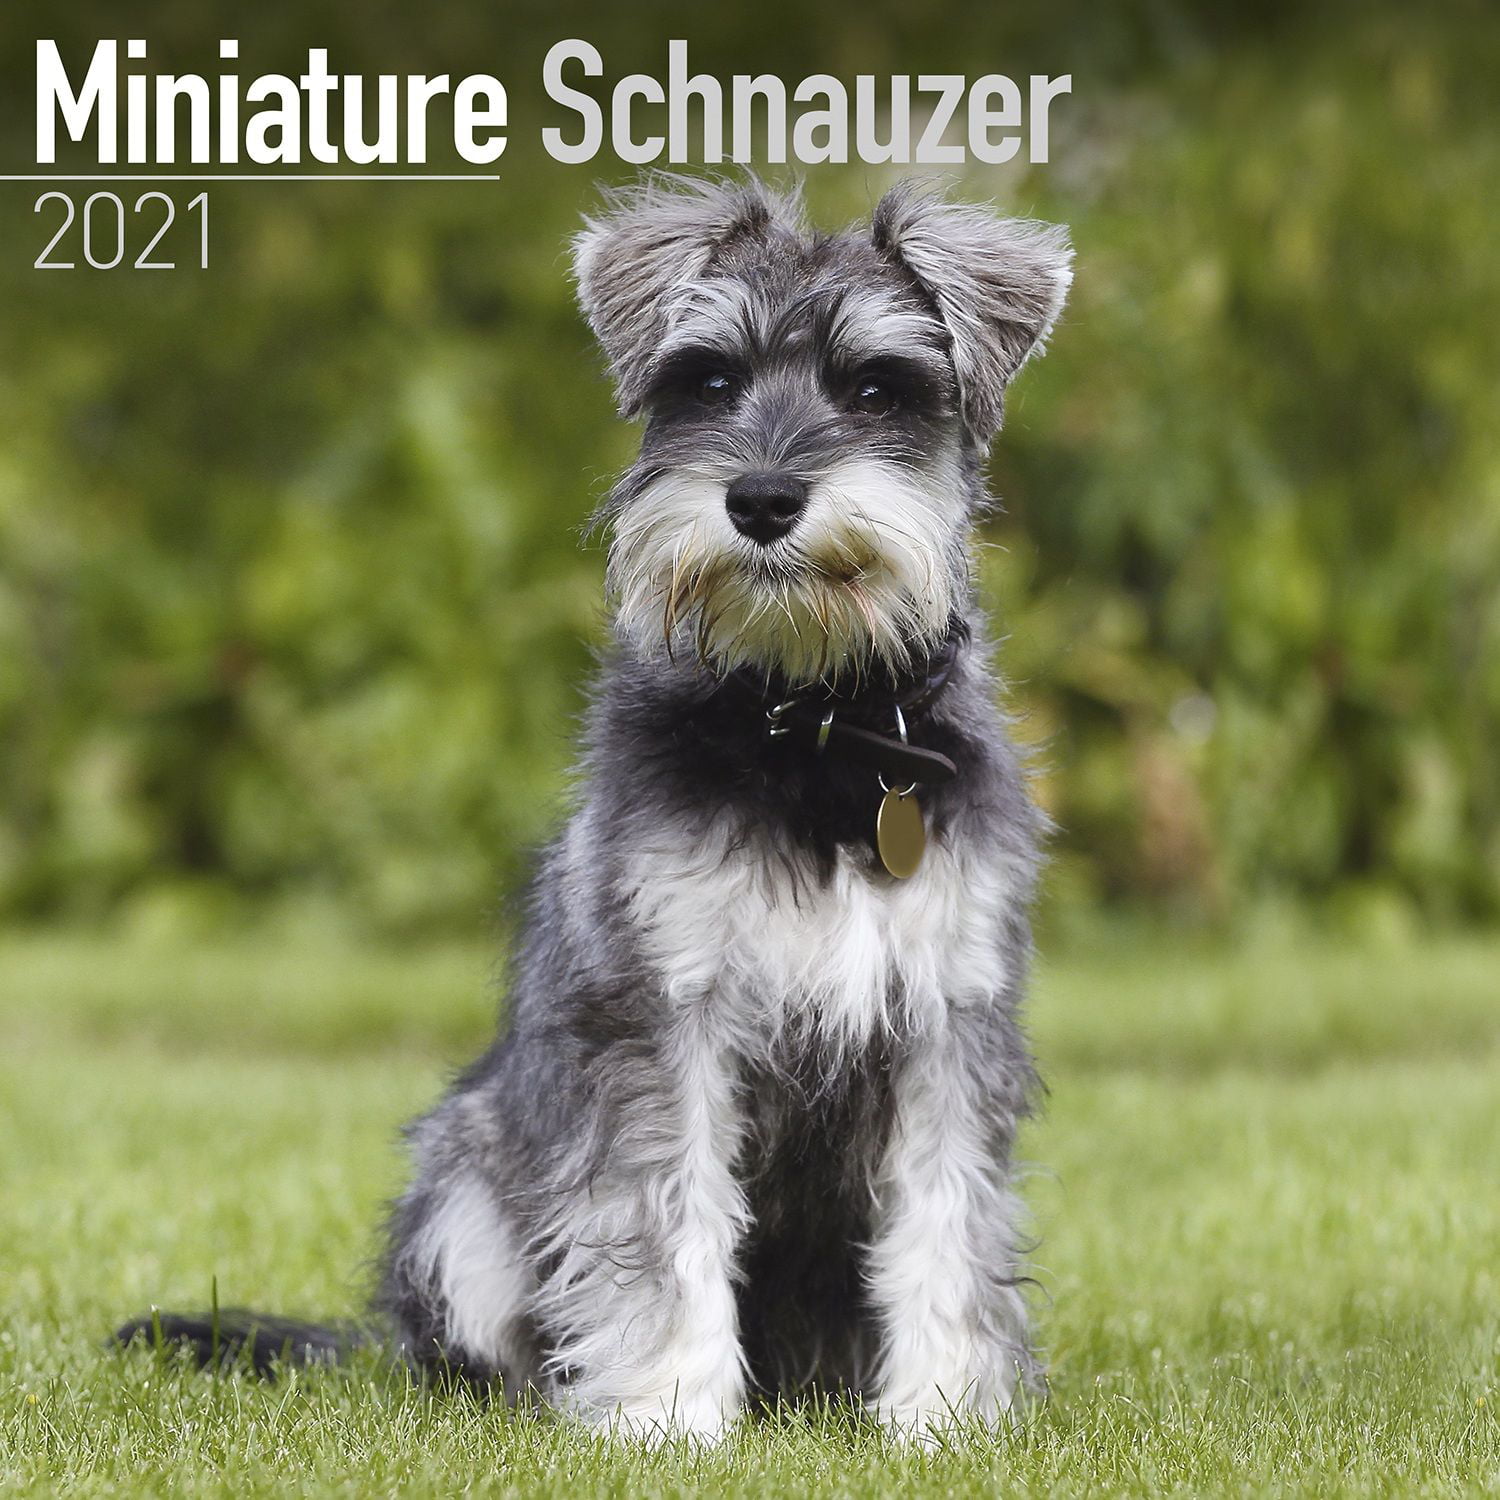 a miniature schnauzer